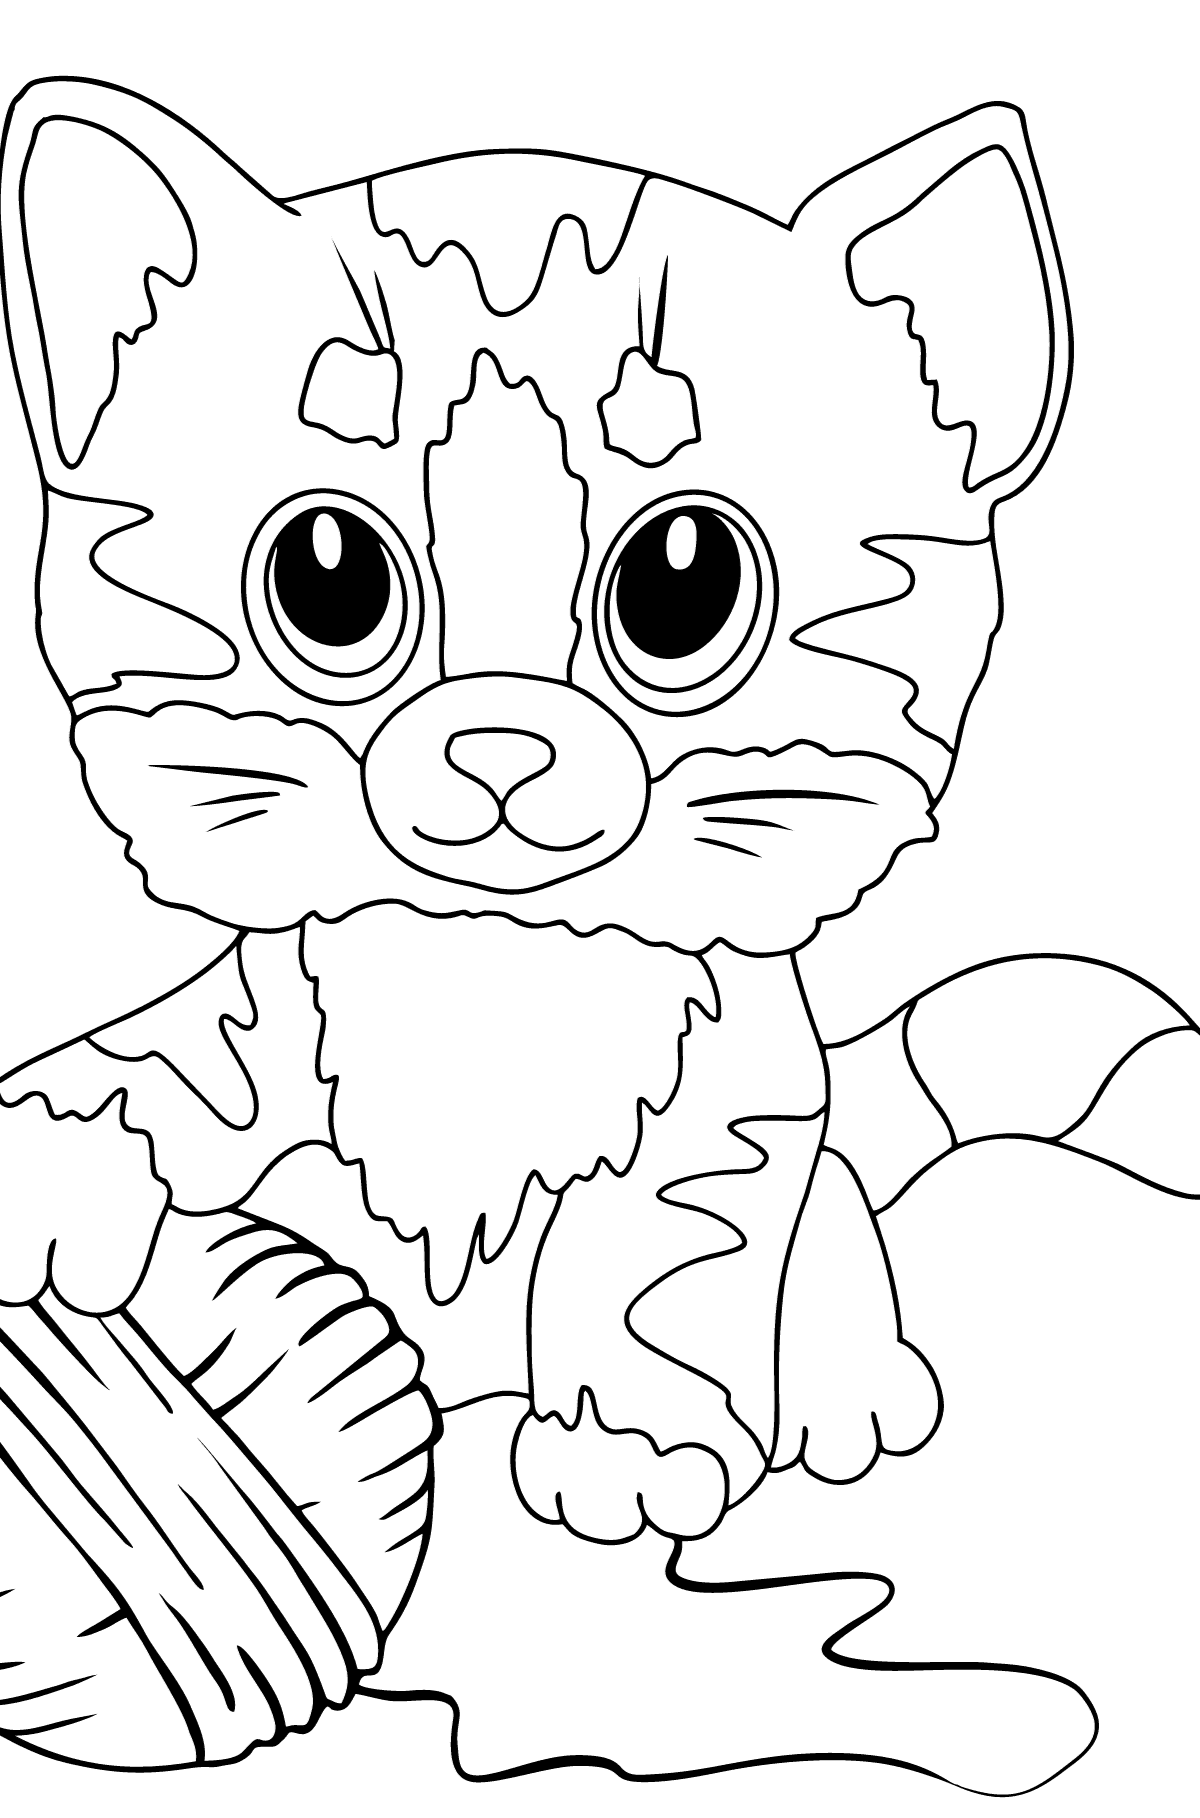 Tegning til fargelegging snill kattunge (enkelt) - Tegninger til fargelegging for barn